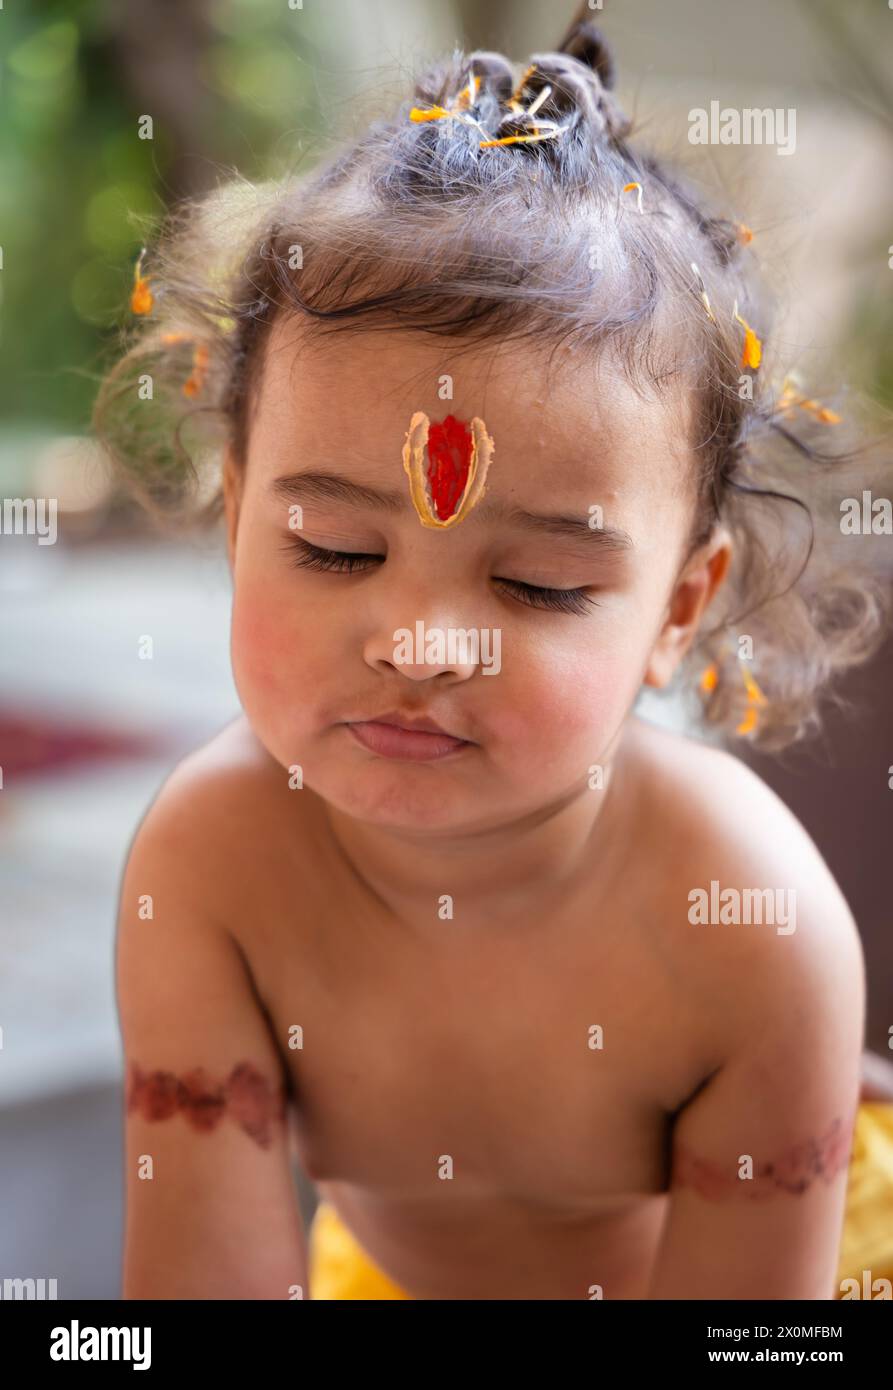 Mignon œil de garçon indien fermé avec symbole religieux Saint sur la tête à l'extérieur avec fond flou Banque D'Images